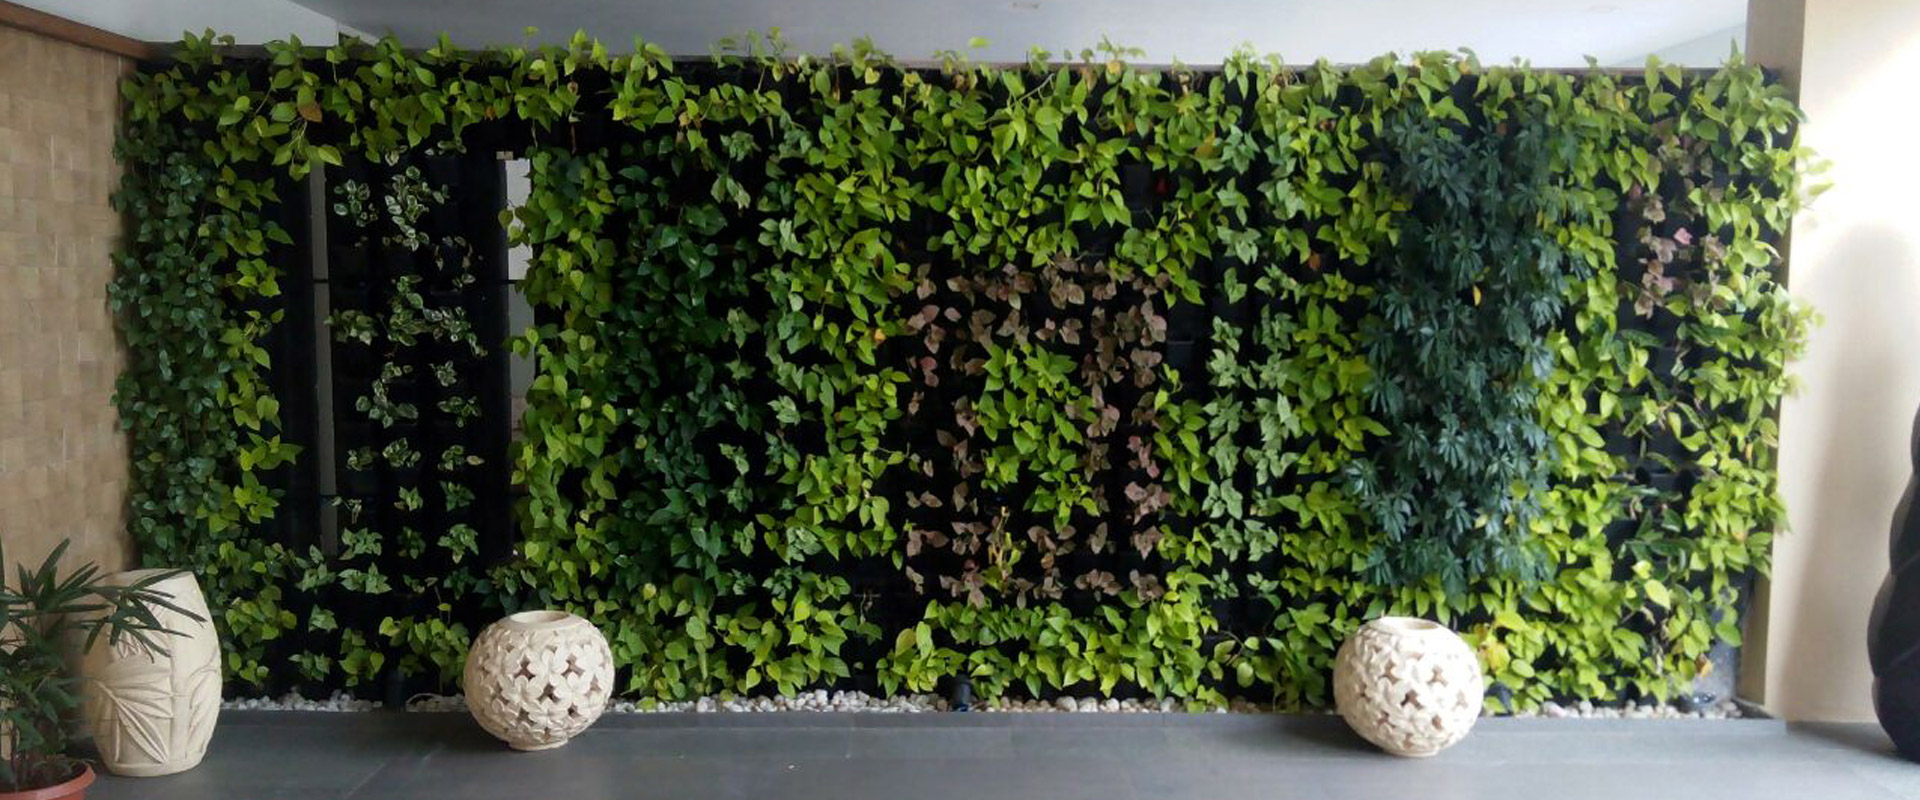 Green Wall Plants Nursery